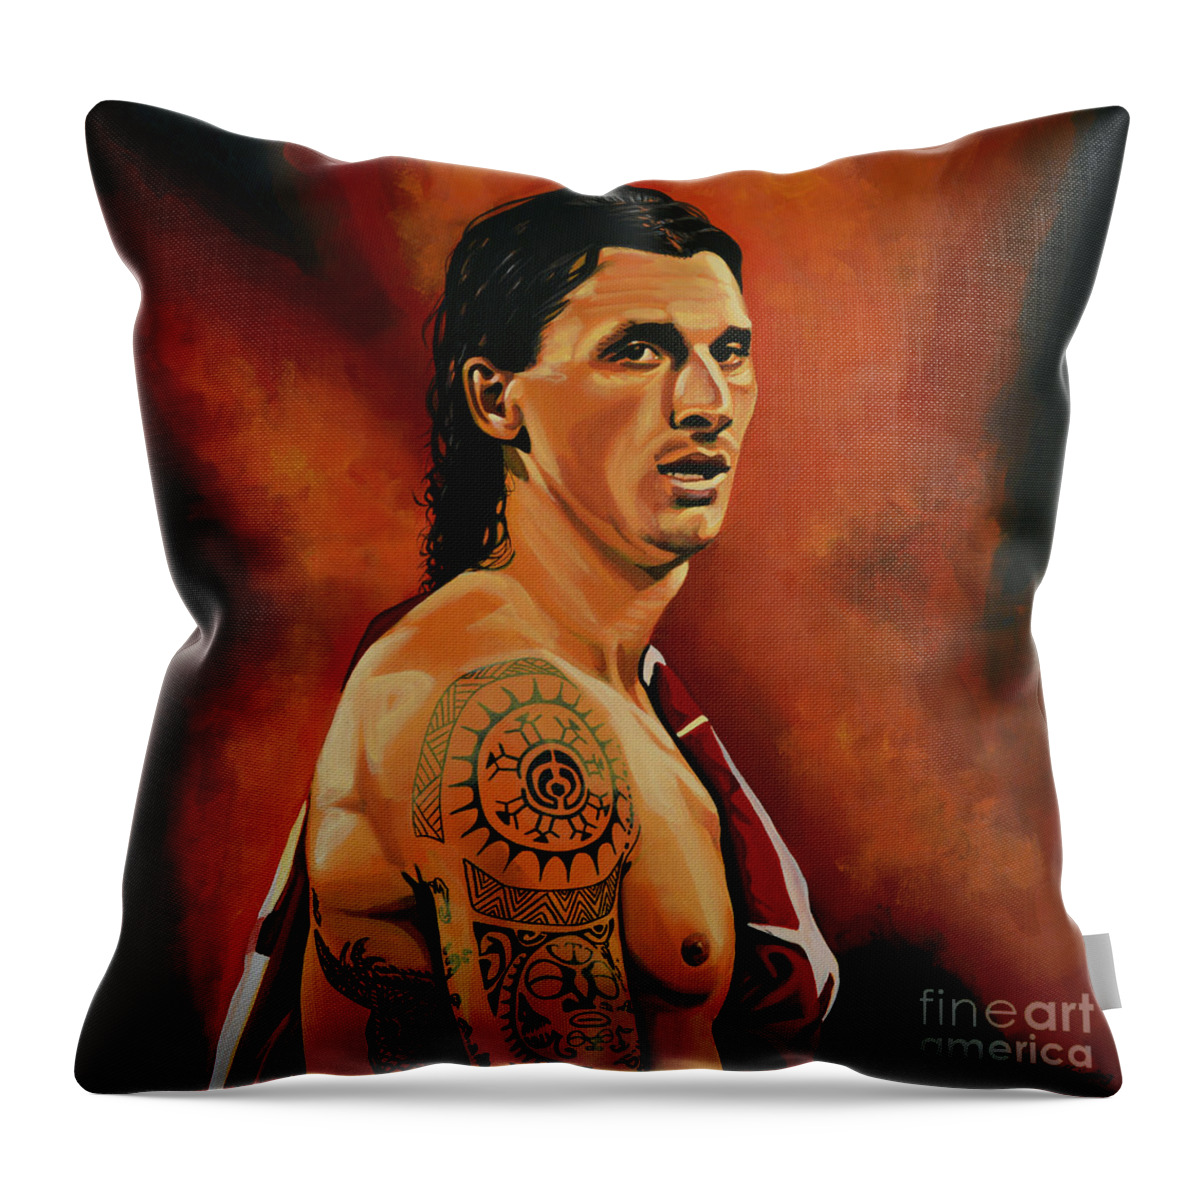 Zlatan Ibrahimovic Throw Pillow featuring the painting Zlatan Ibrahimovic Painting by Paul Meijering